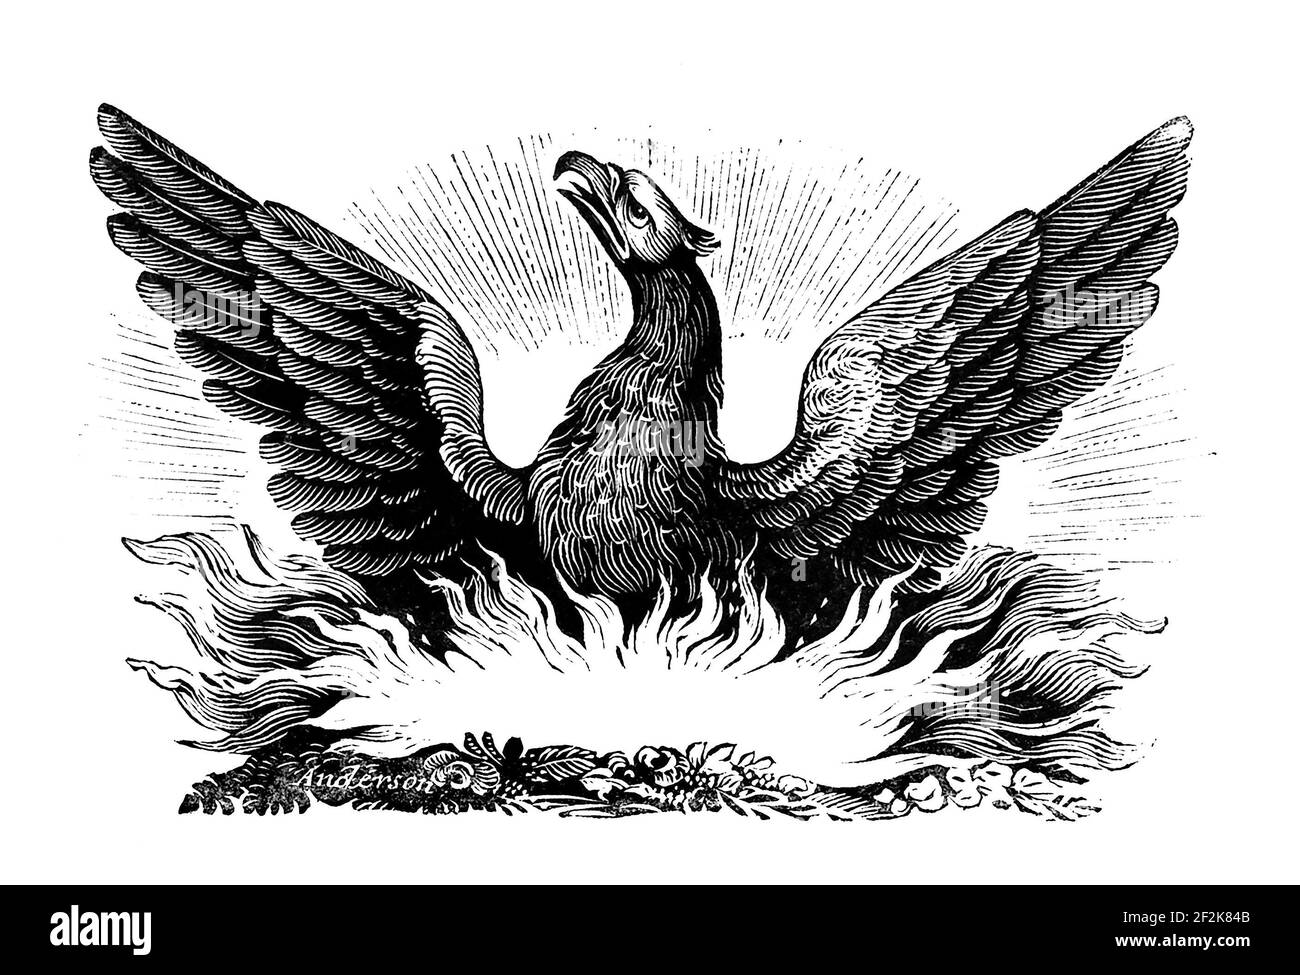 Phoenix. Grabado en madera del pájaro mítico, siglo 19th. Foto de stock